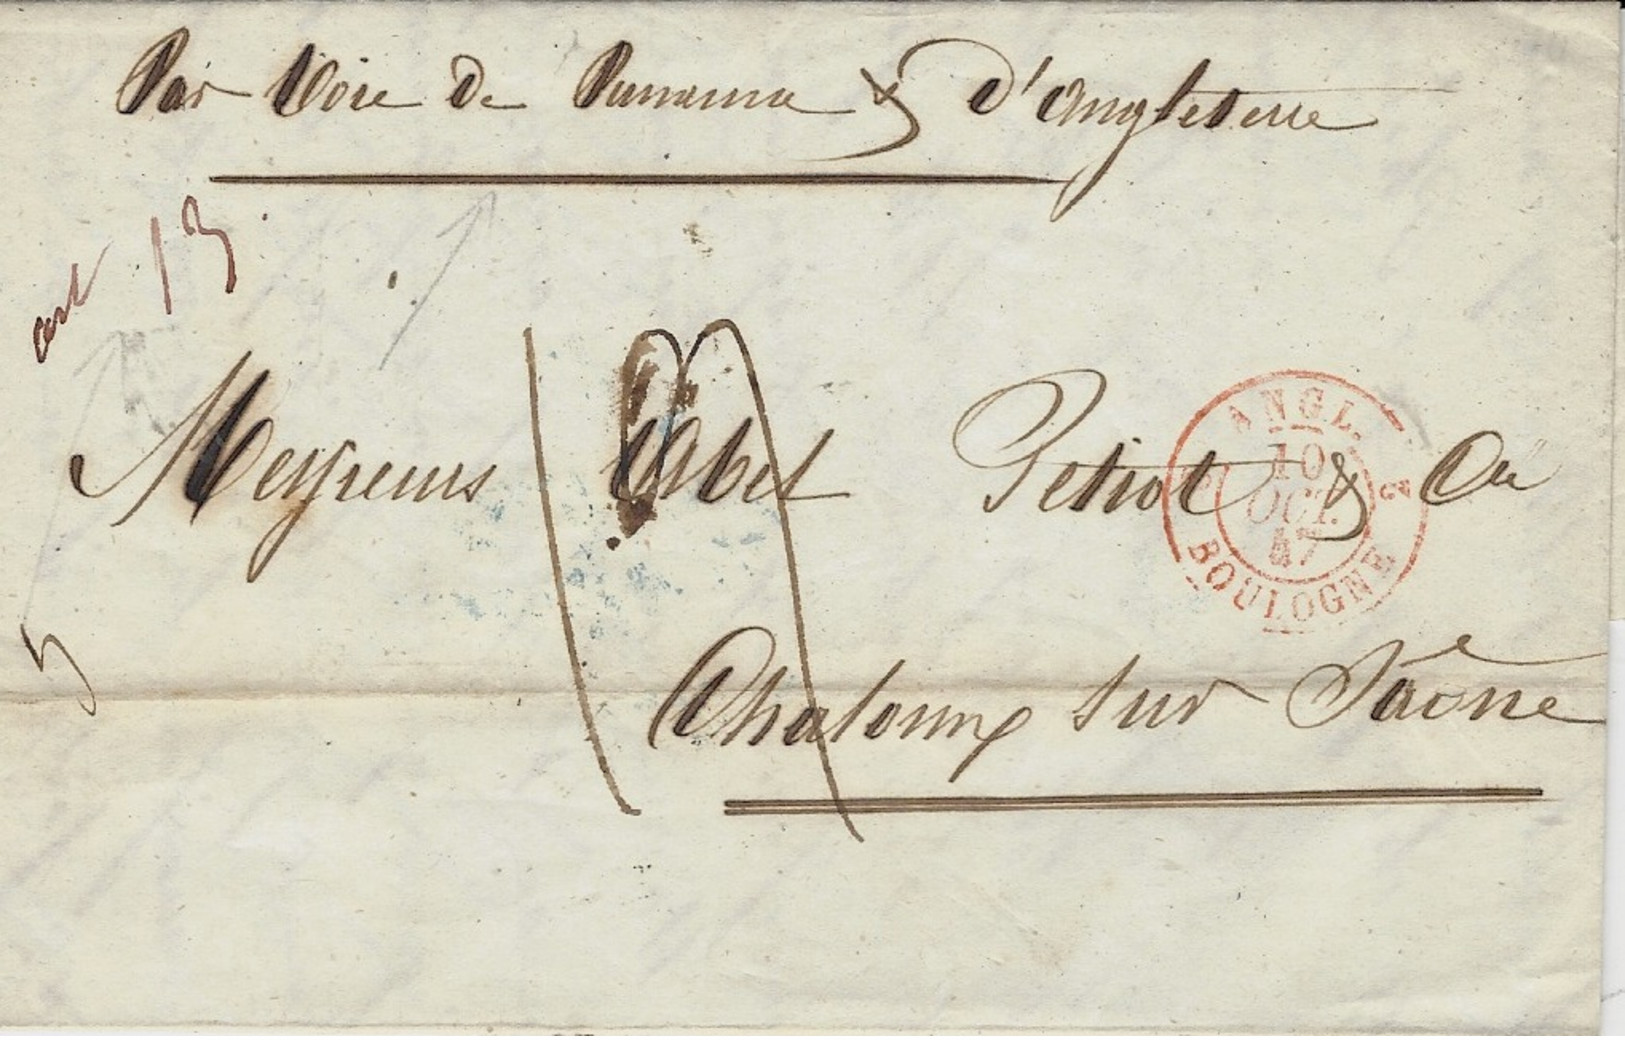 1847- Lettre De Valparaiso " Par Voie De Panama Et D'Angleterre  - Entrée Cad Rouge " ANGL. 2 BOULOGNE 2 " - Marques D'entrées